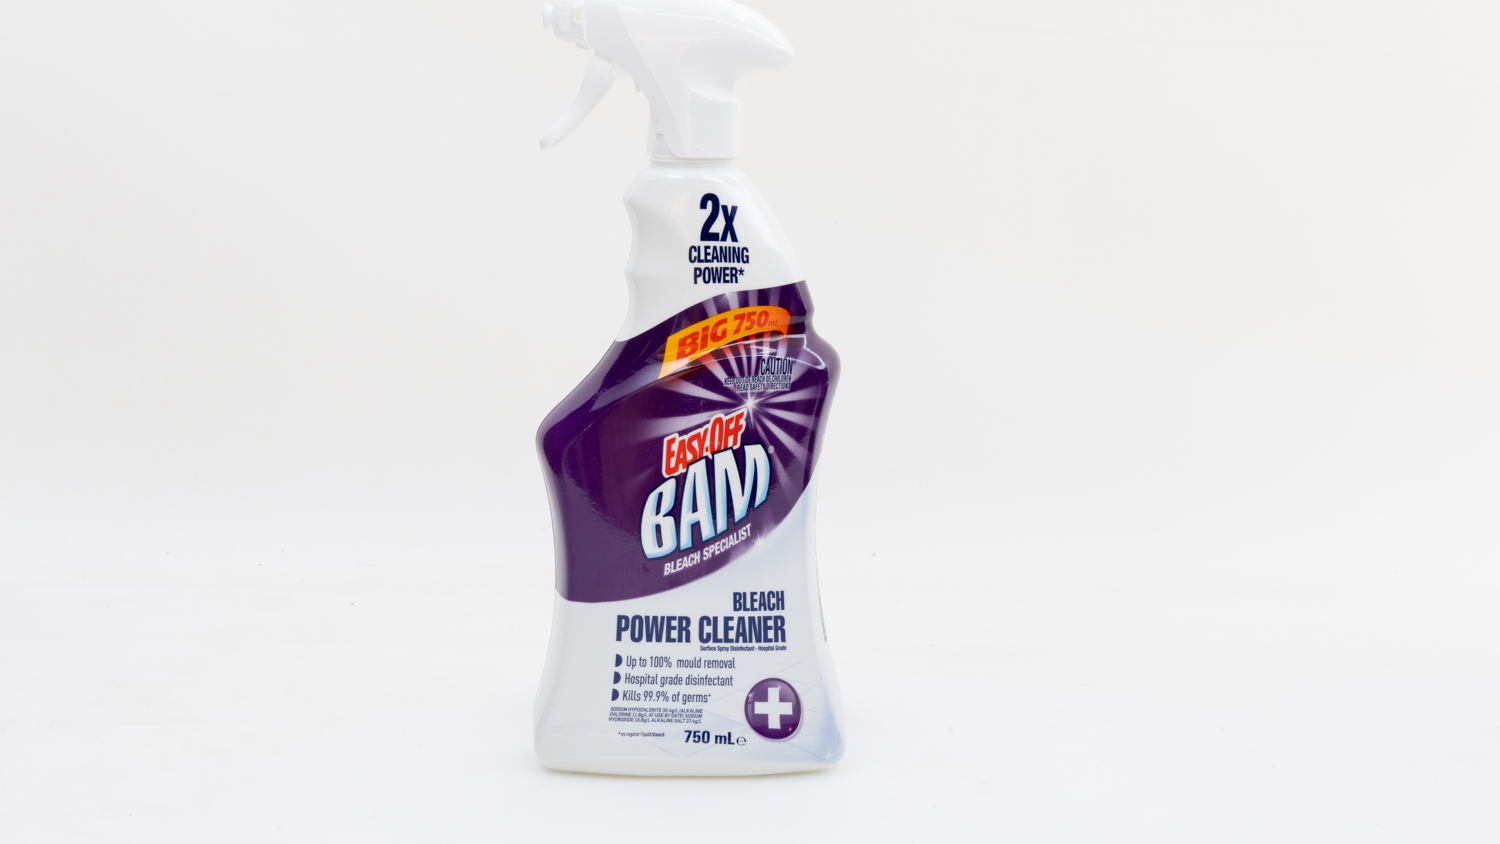 Easy Off Bam Bleach Power Cleaner carousel image